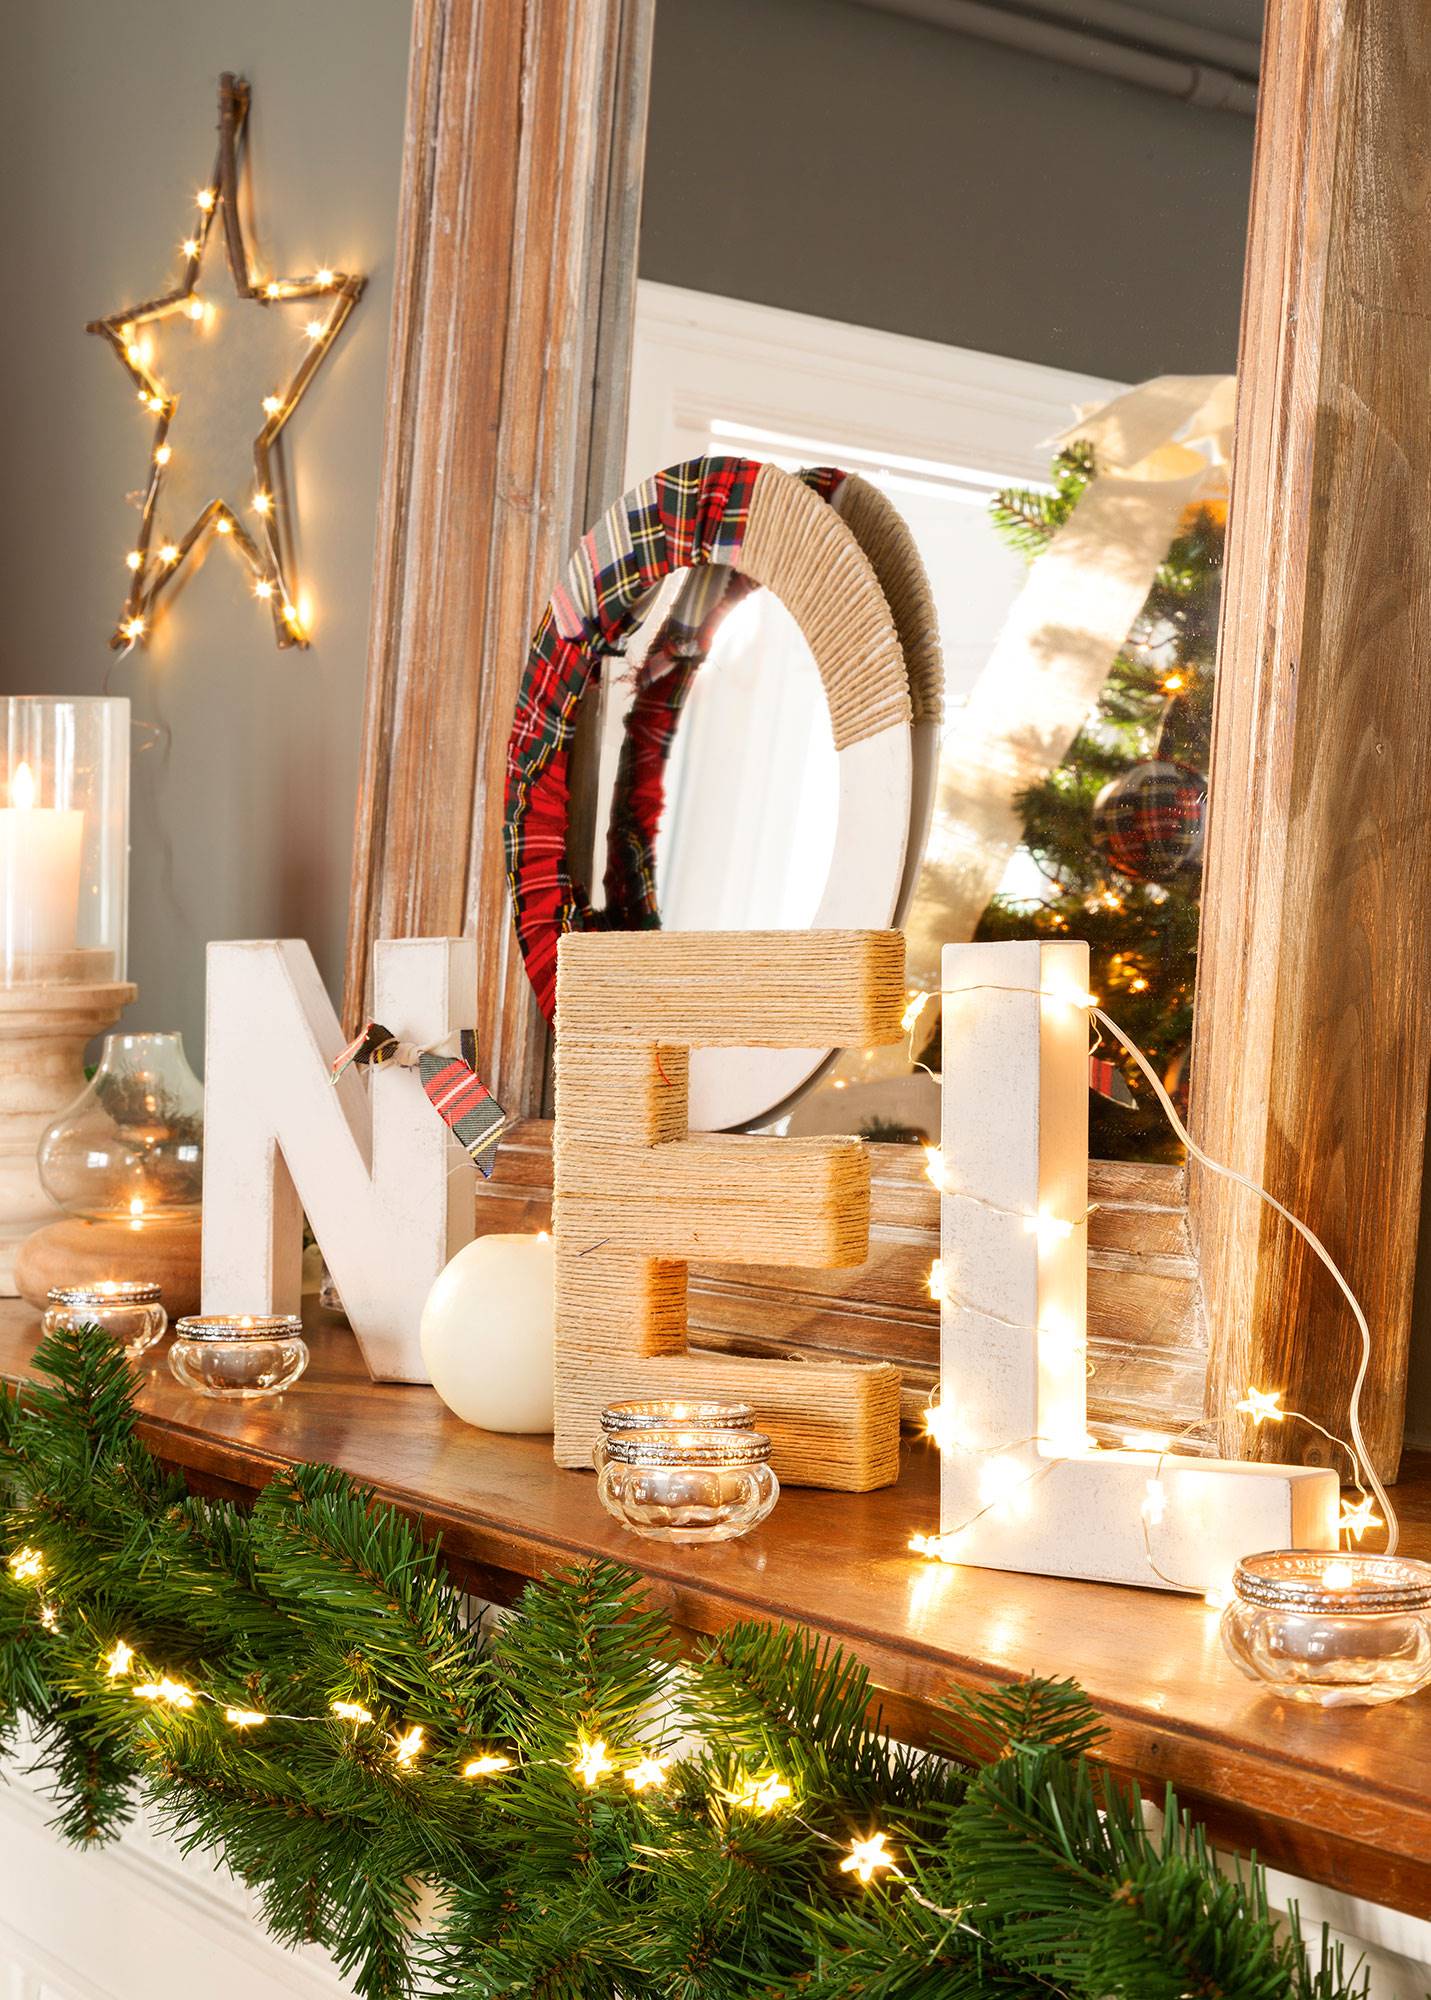 Detalle de repisa de chimenea decorada con la palabra Noel, guirnalda luminosa y velas